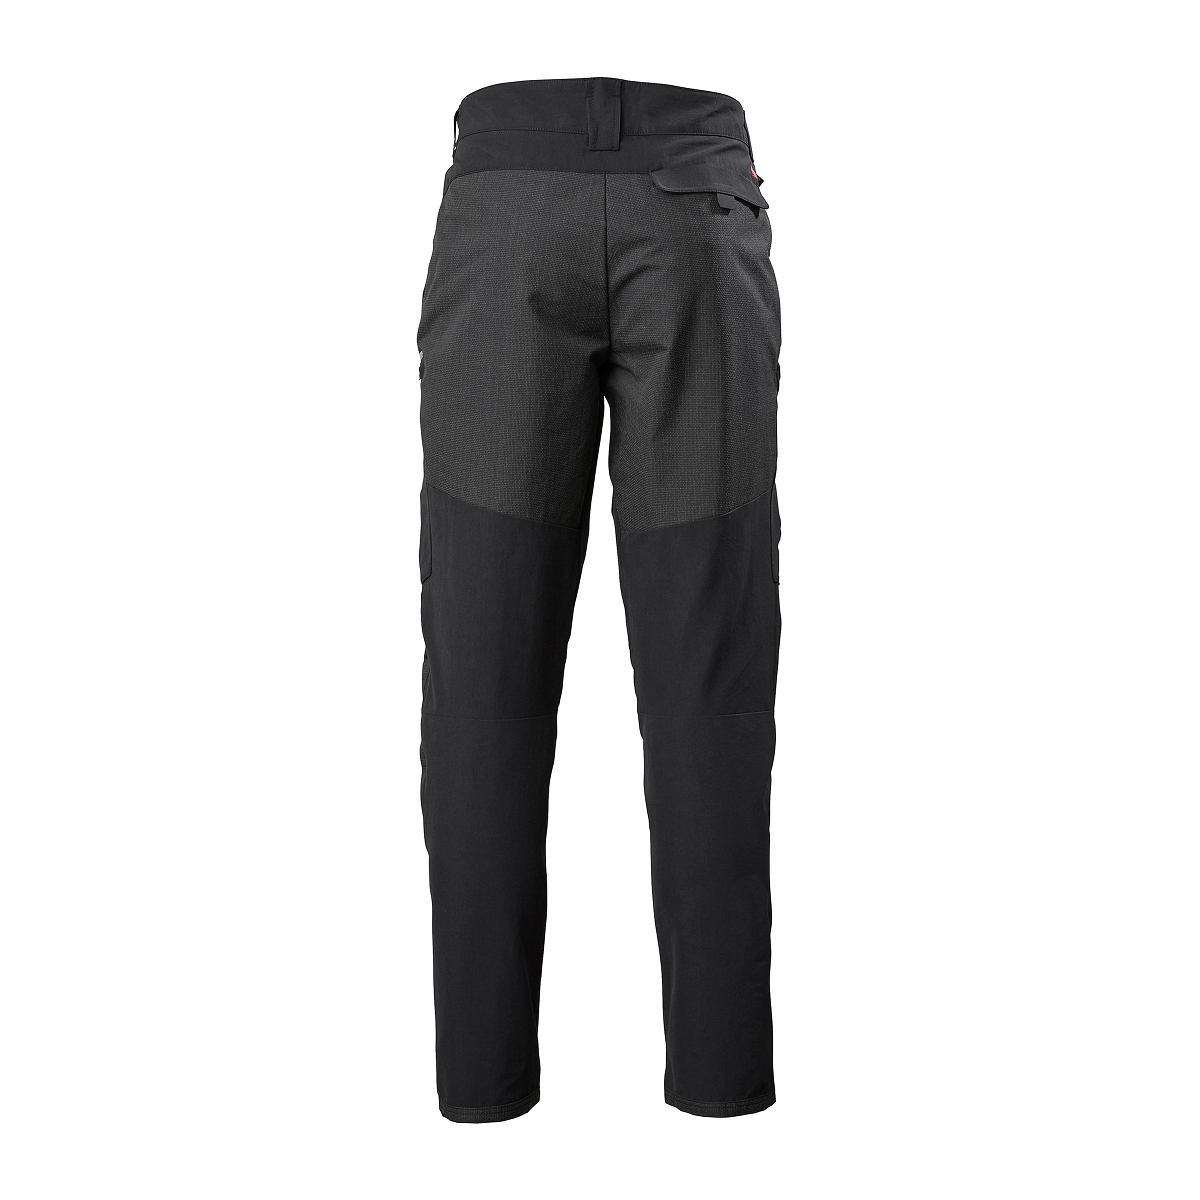 Musto Evolution Performance pantalon de voile 2.0 homme noir, taille 40